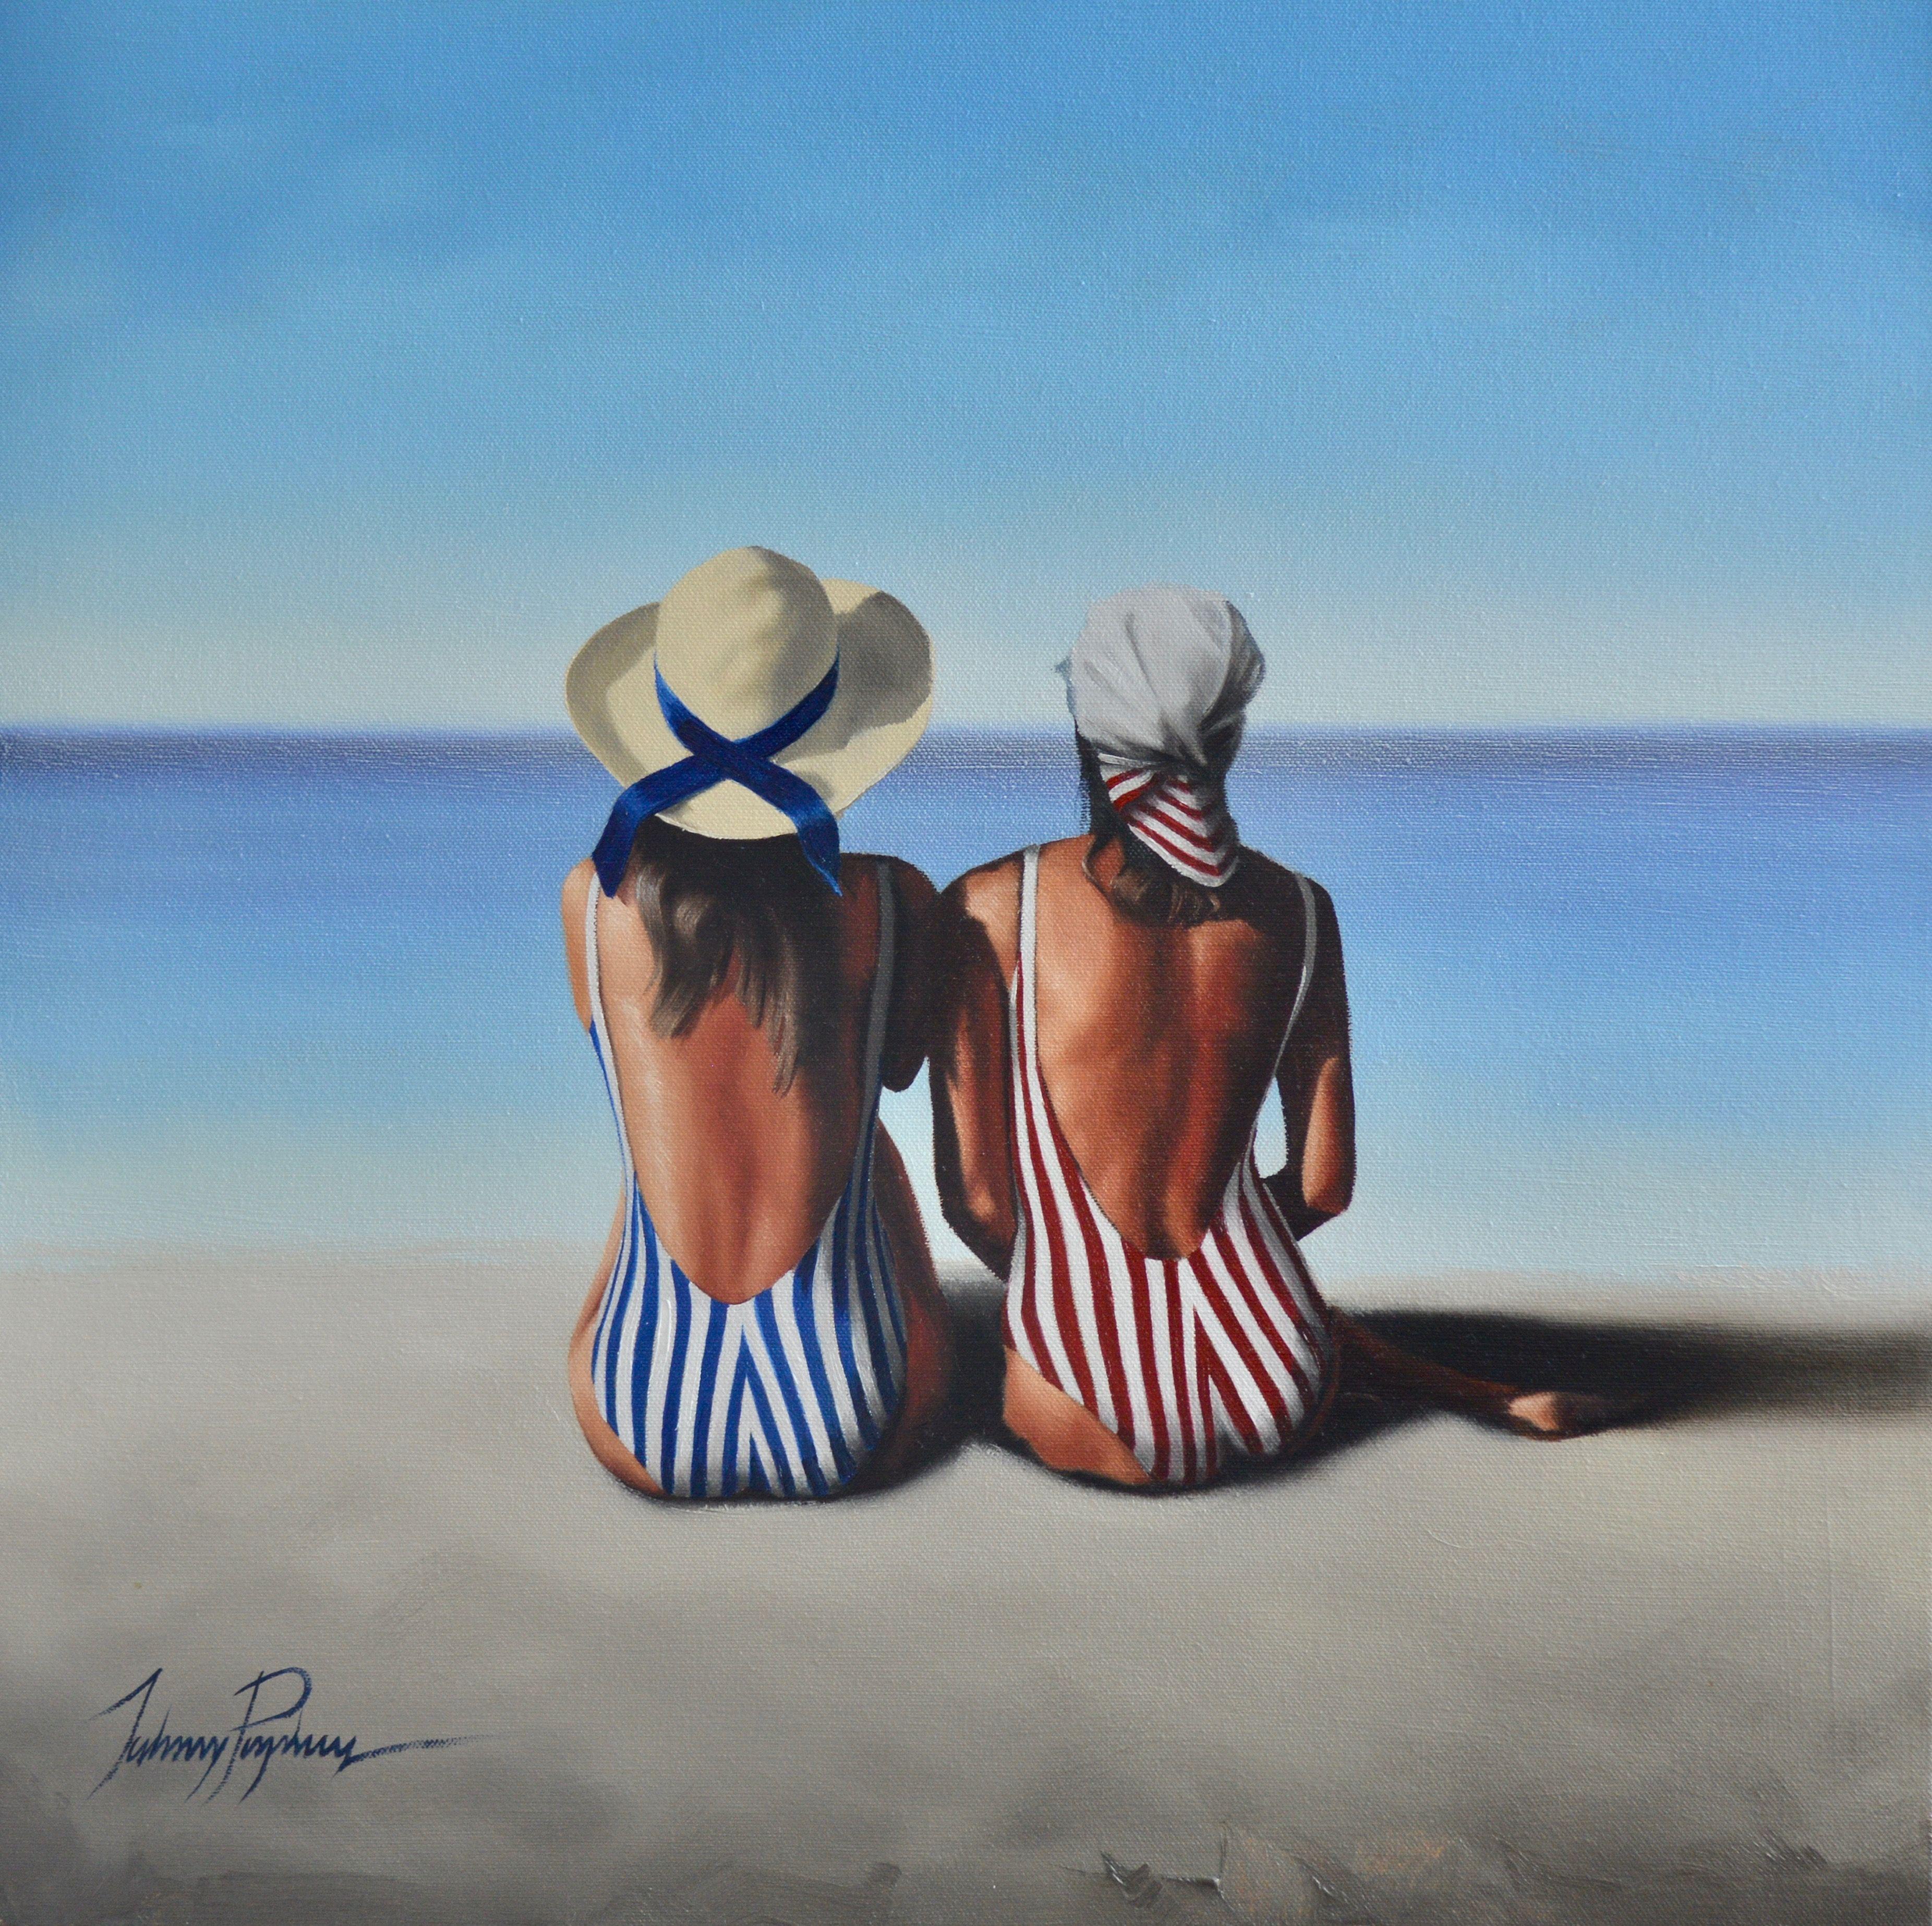 La plage, peinture à l'huile sur toile - Réalisme Painting par John Popkess